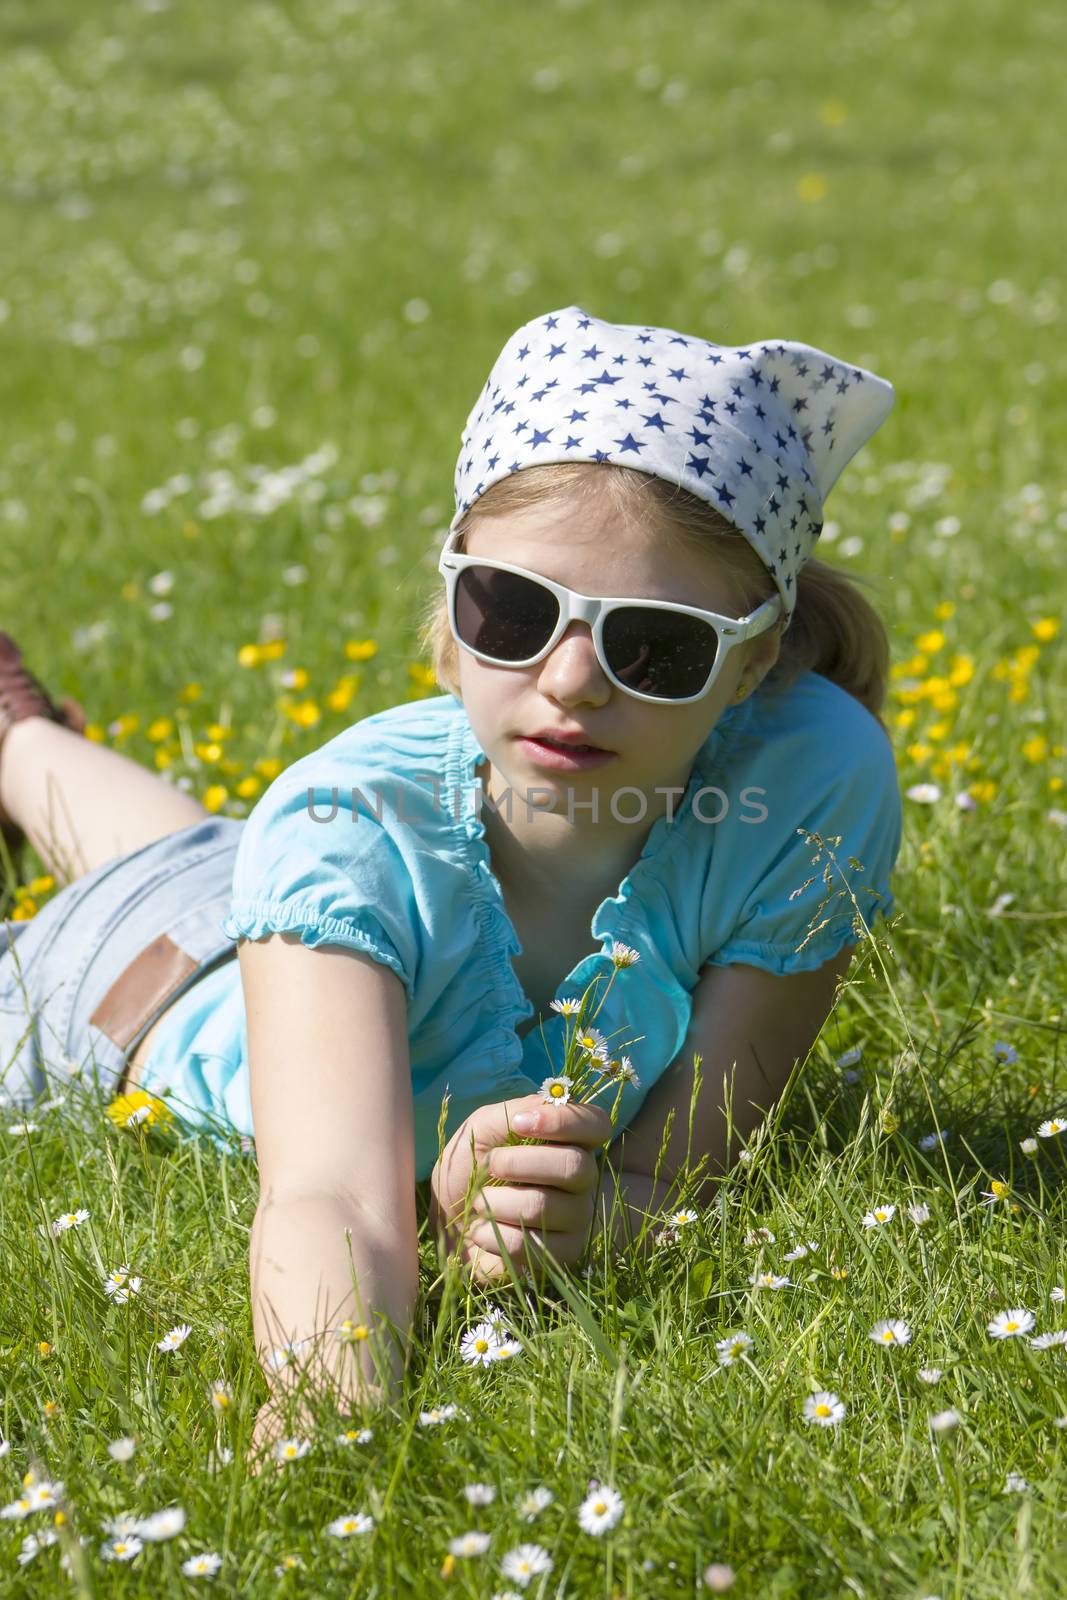 little girl lying on grass